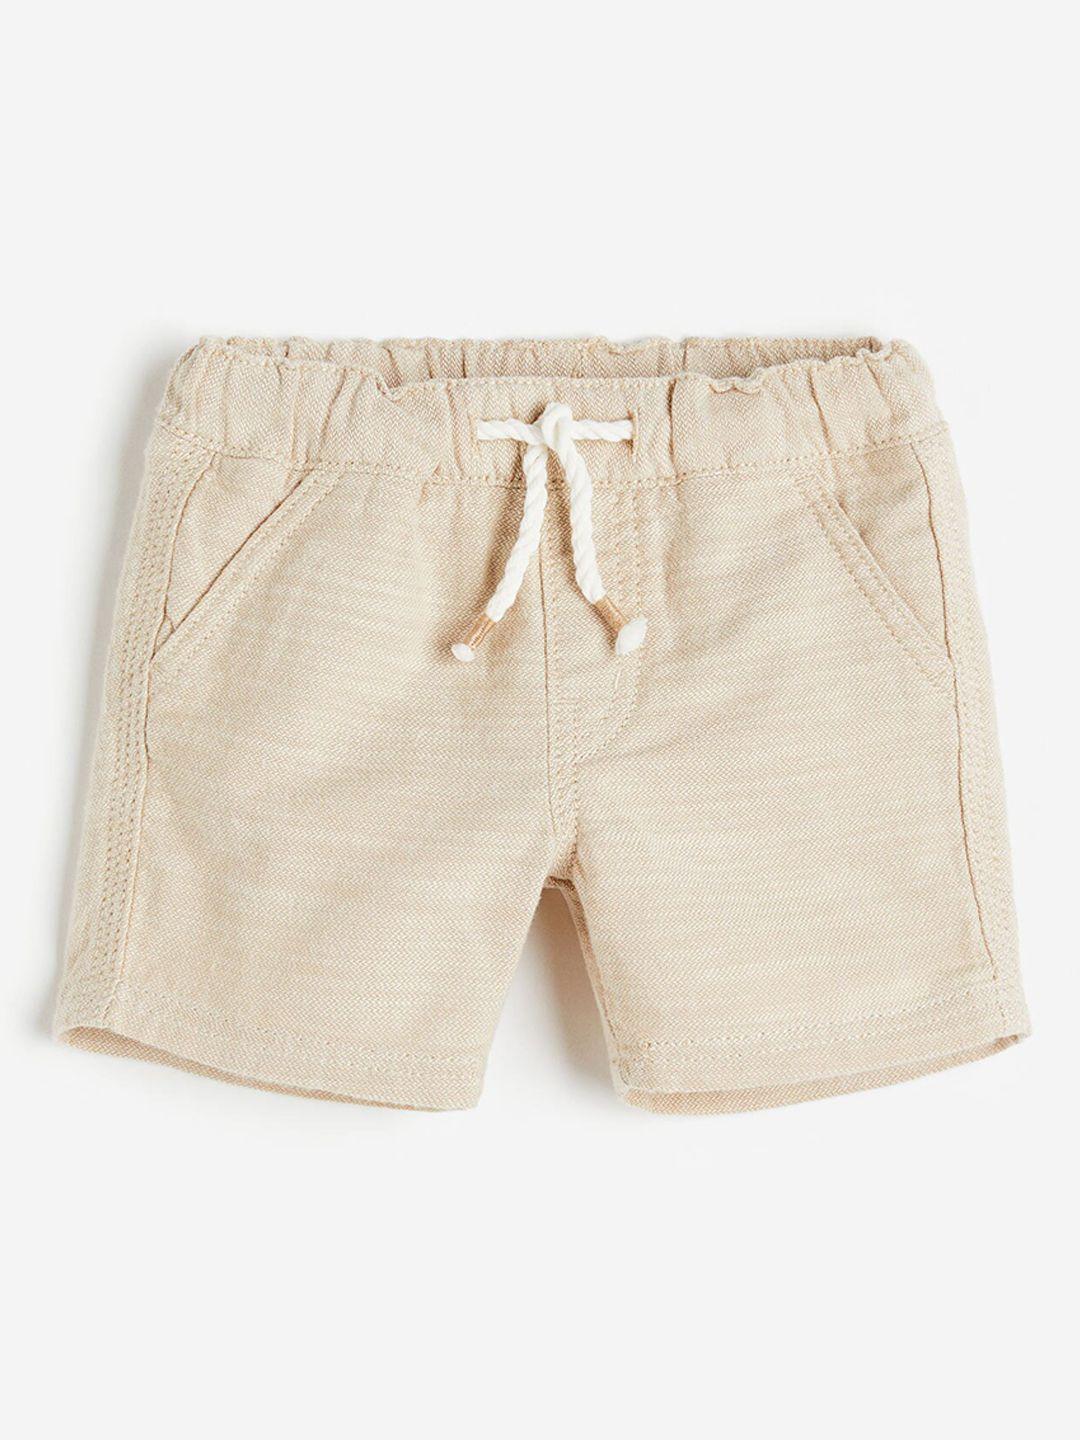 h&m boys pure cotton shorts